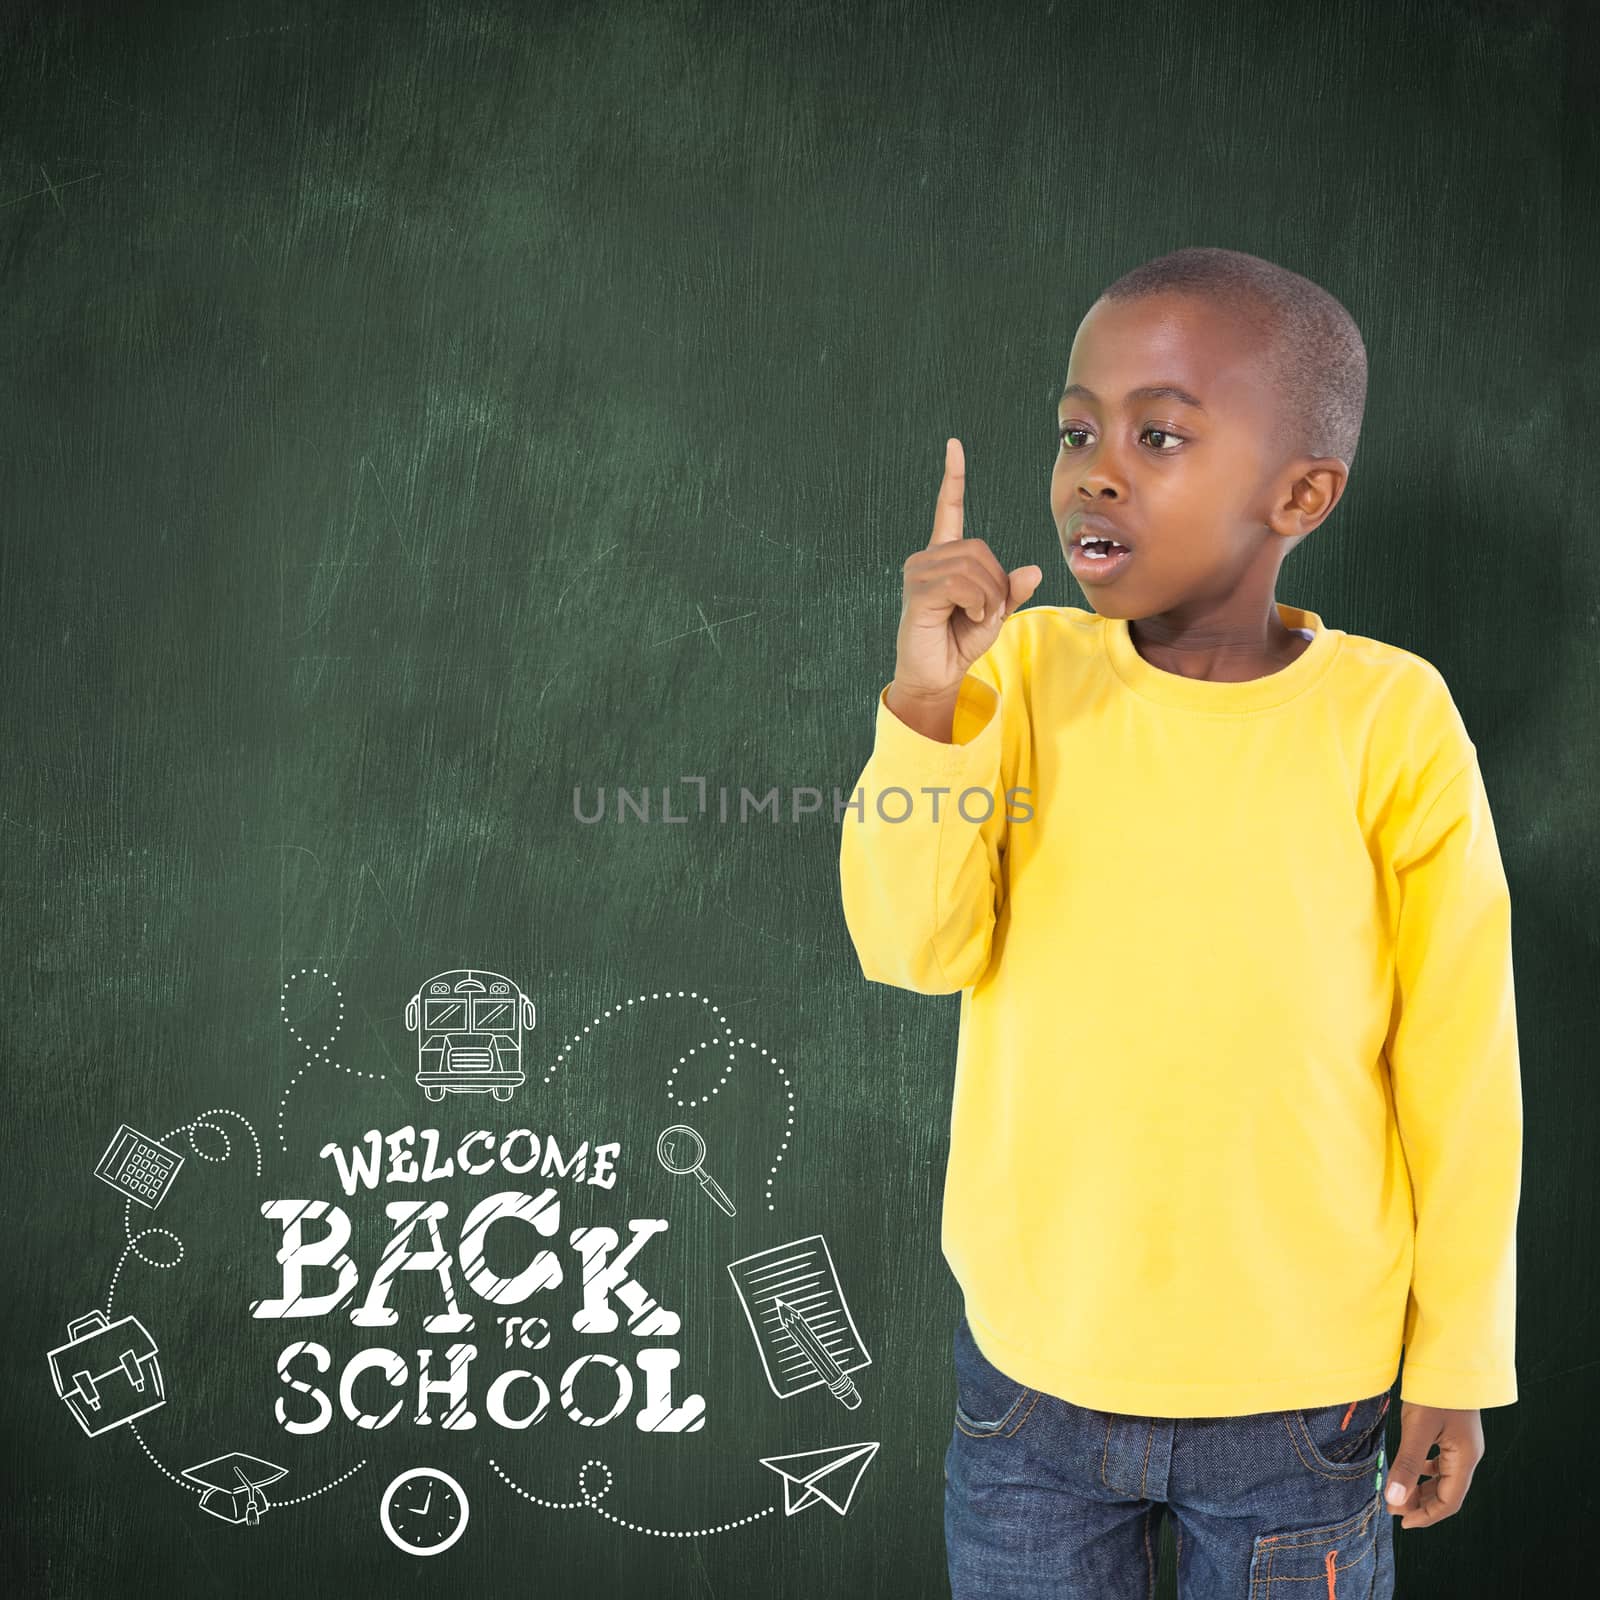 Cute boy pointing against green chalkboard